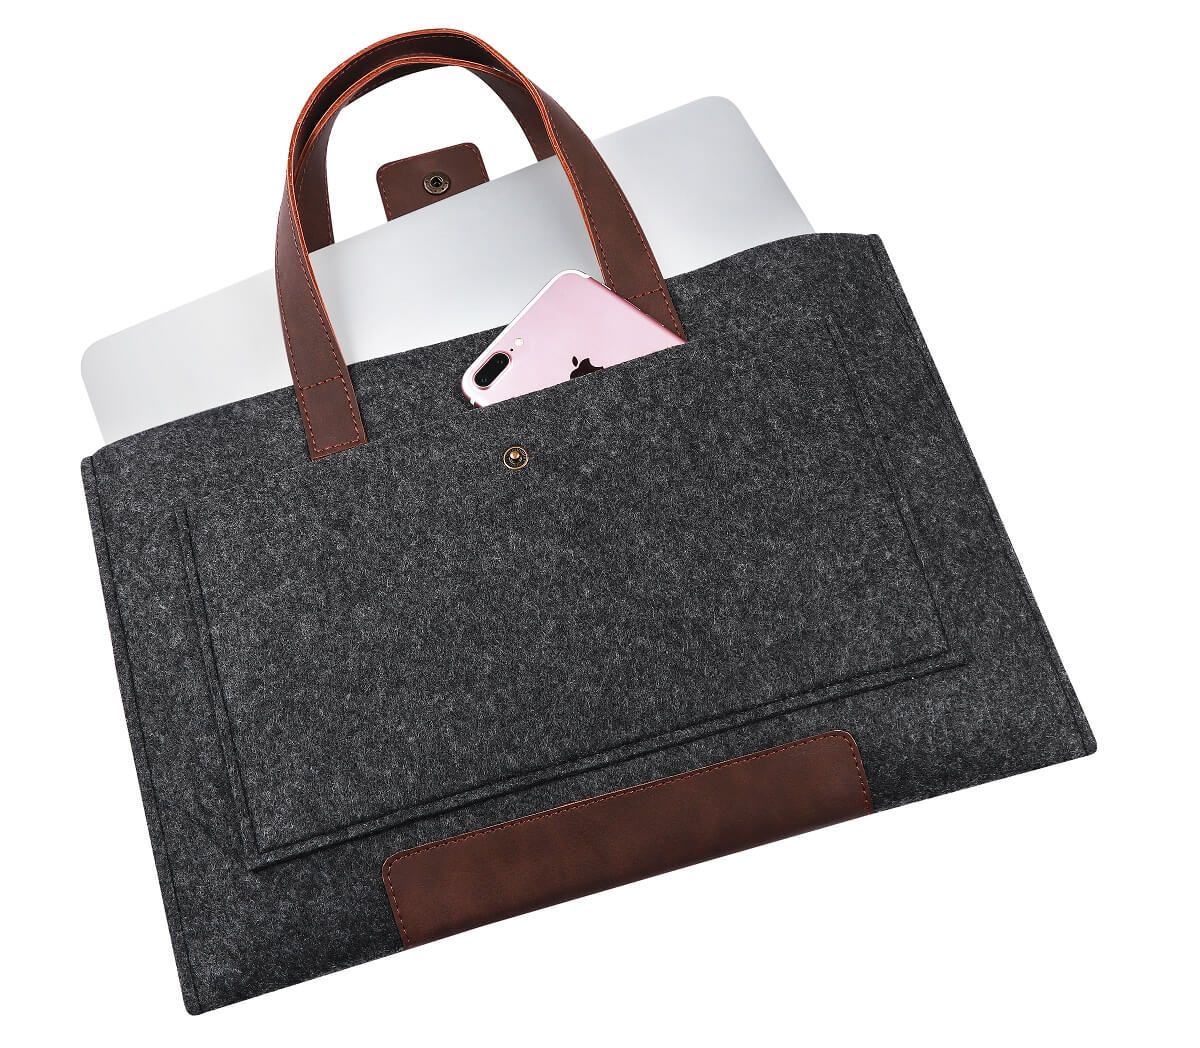 Войлочная сумка Gmakin для Macbook Air/Pro Черная Air 13 M1